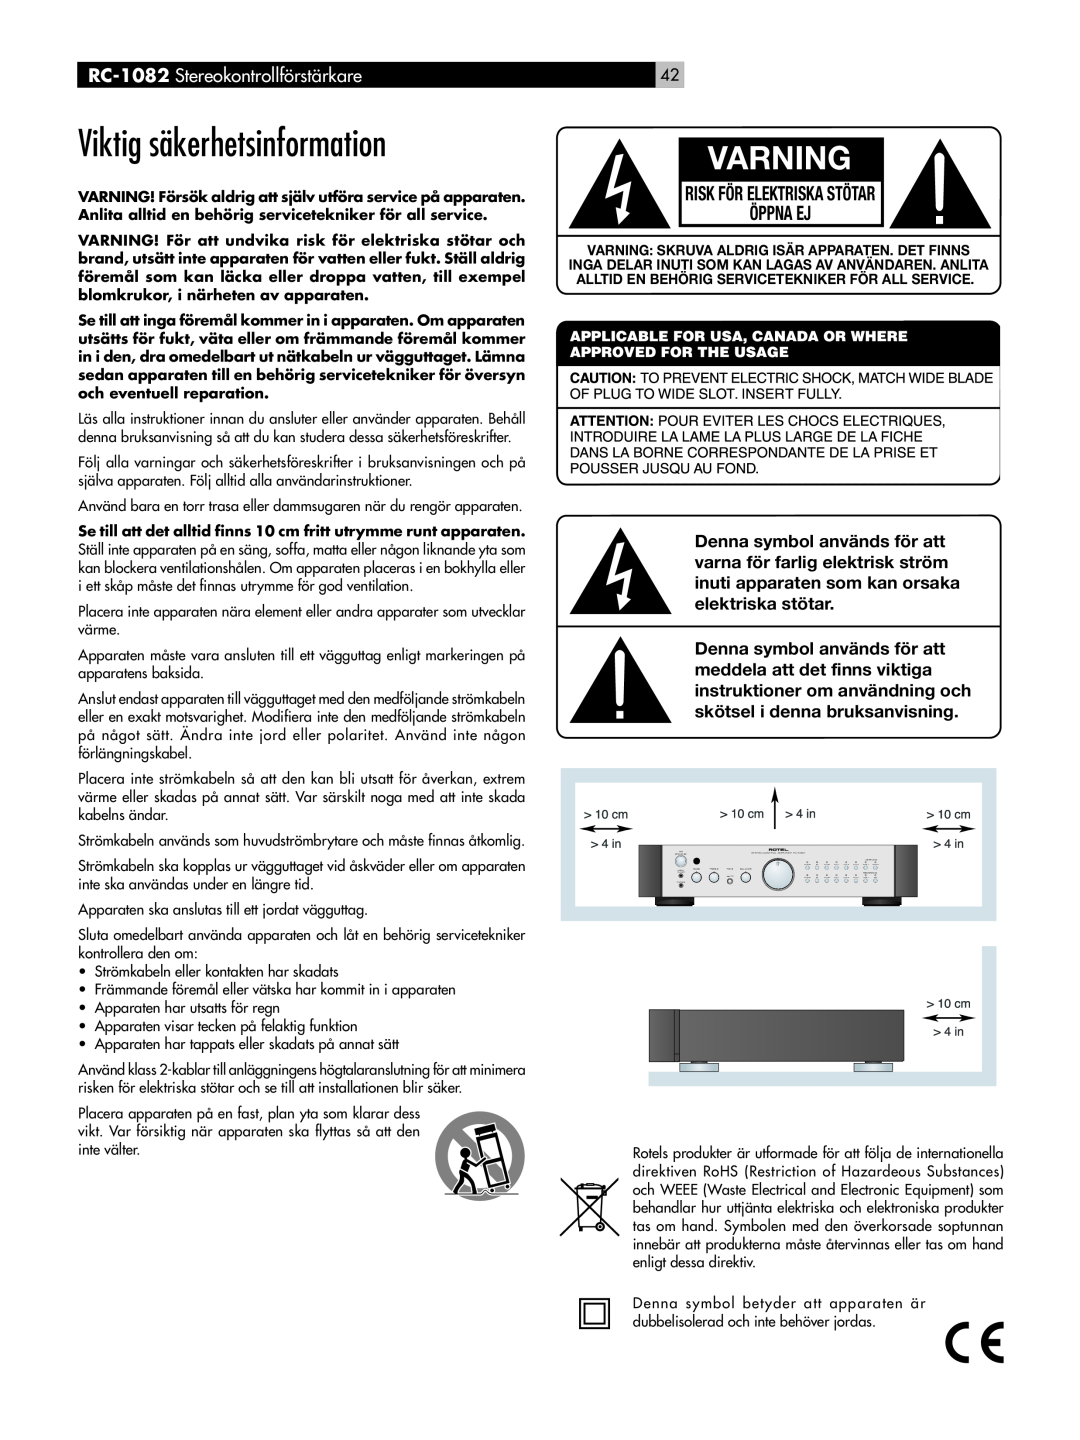 Rotel Viktig säkerhetsinformation, Varning, RC-1082 Stereokontrollförstärkare, Risk För Elektriska Stötar Öppna Ej 